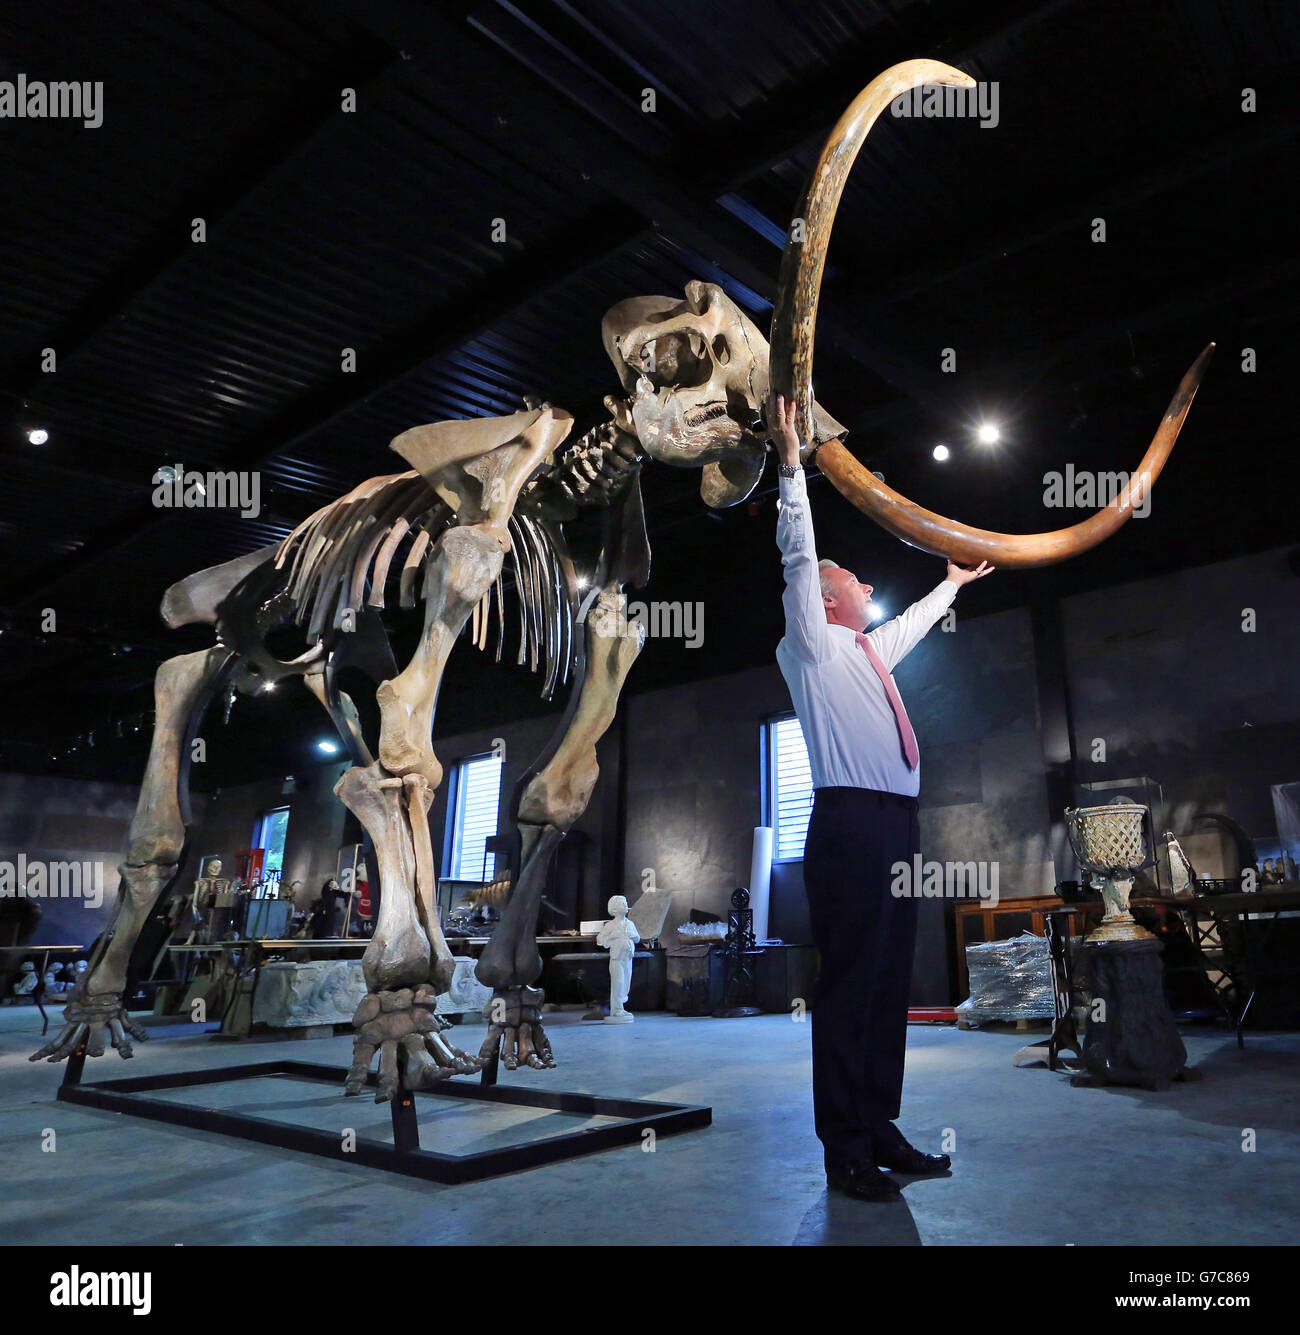 James Rylands, Auktionator und Direktor von Summers Place Auctions in West Sussex, bereitet das Skelett eines Eiszeitmammuths vor, das 3.5 Meter hoch und 5.5 Meter lang ist und komplett mit Stoßzähnen ausgestattet ist, für ihren zweiten Evolution-Verkauf im November. Stockfoto